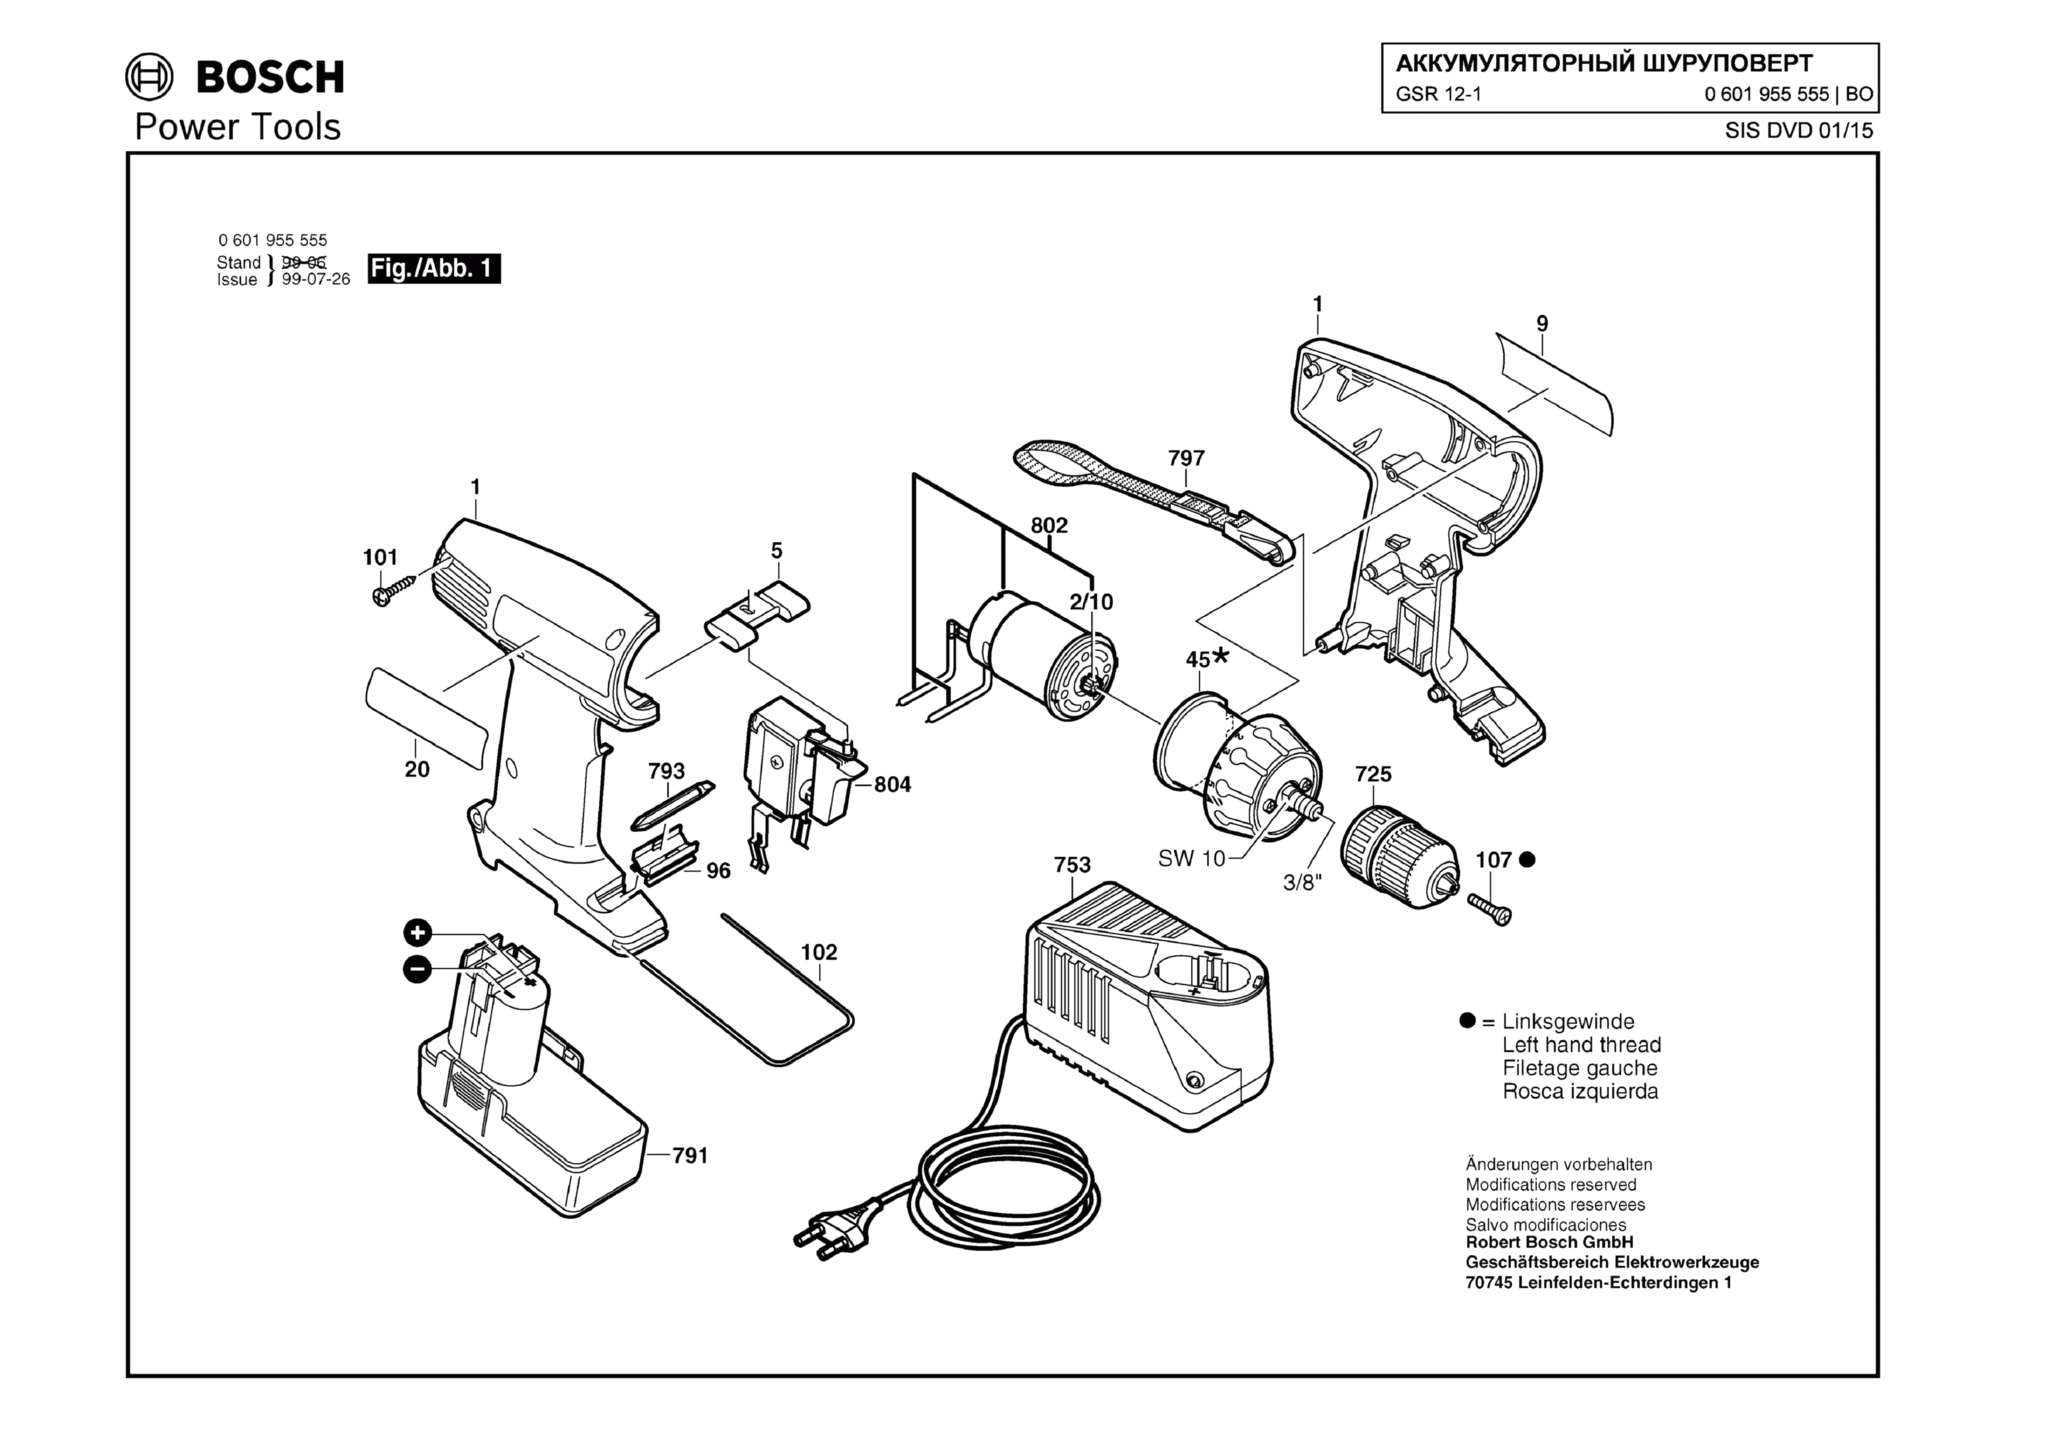 Запчасти, схема и деталировка Bosch GSR 12-1 (ТИП 0601955555)